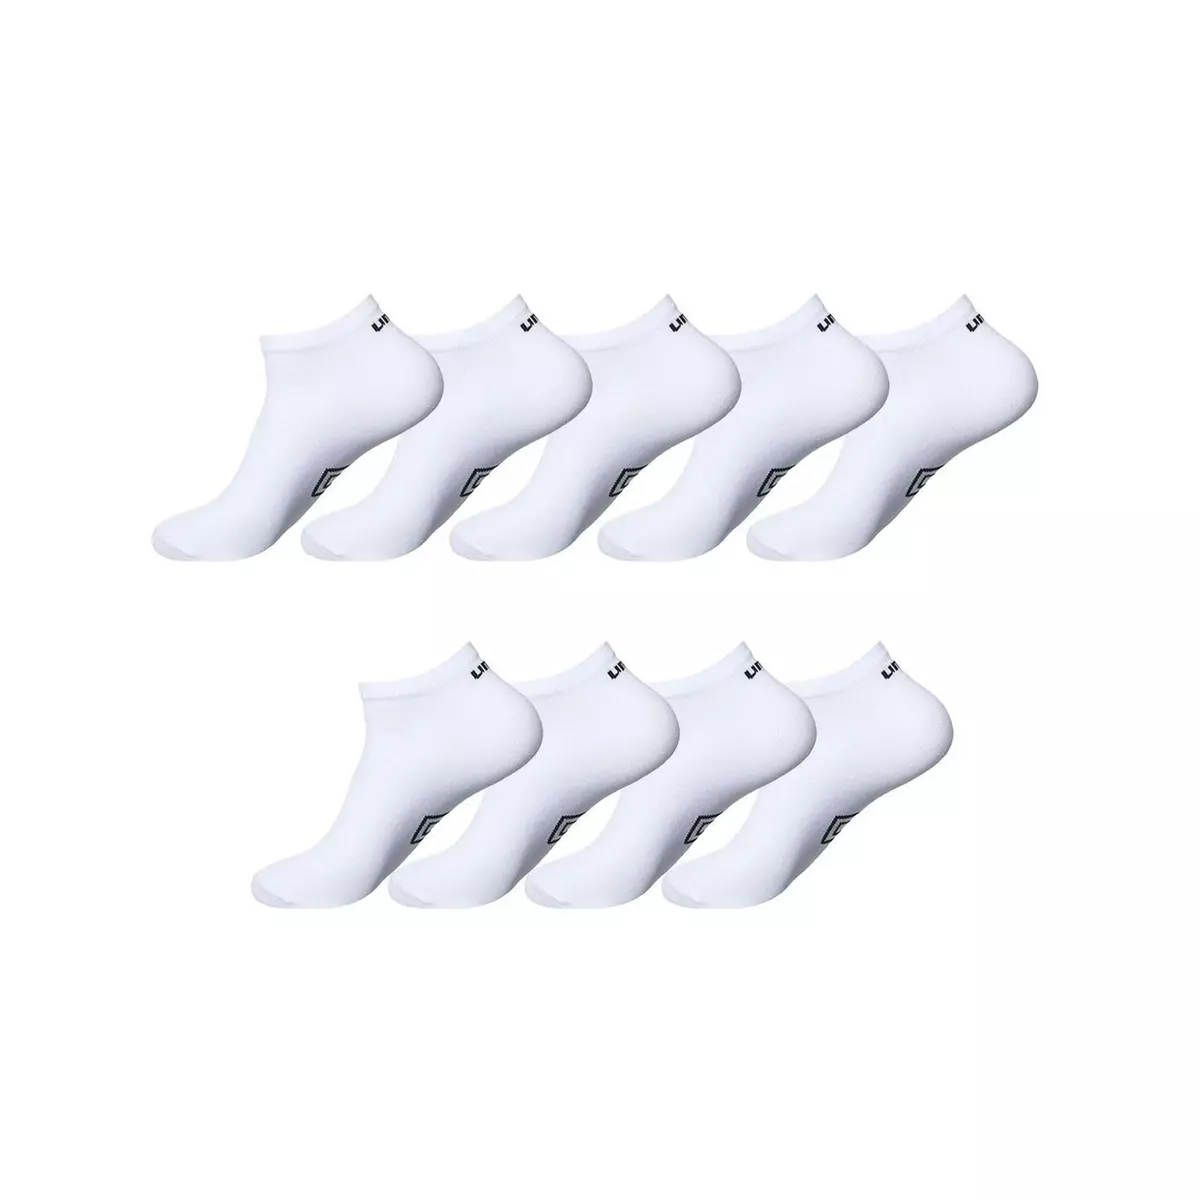 UMBRO Lot de 9 paires de chaussettes socquettes Umbro Blanc